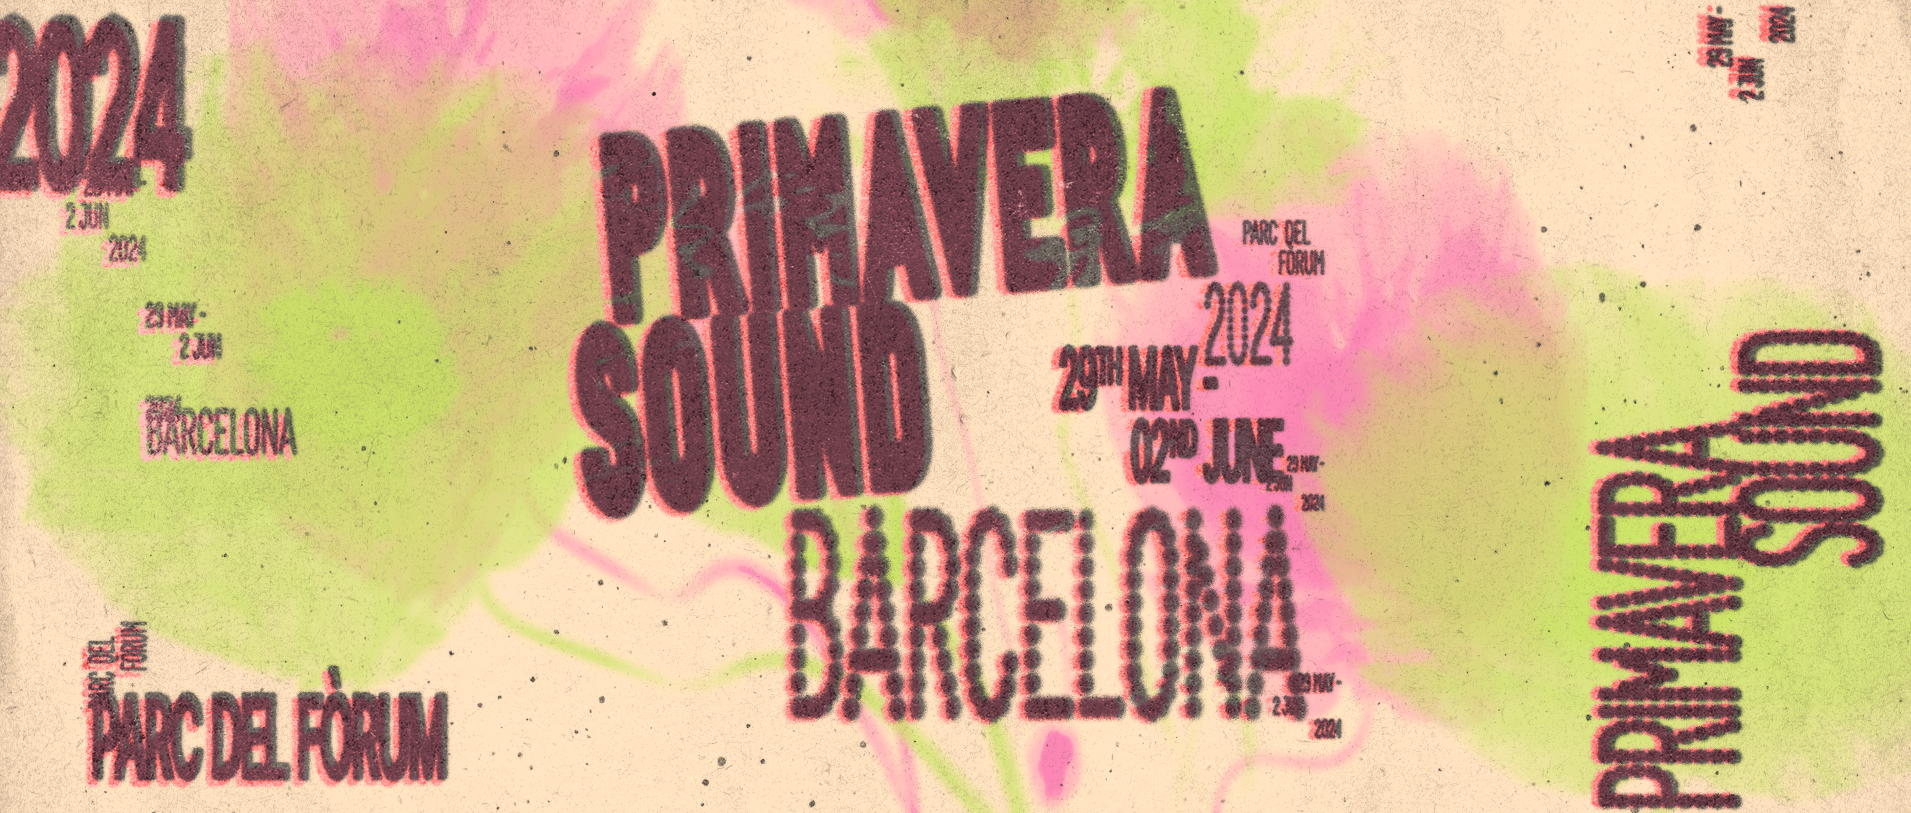 Primavera Sound Barcelona